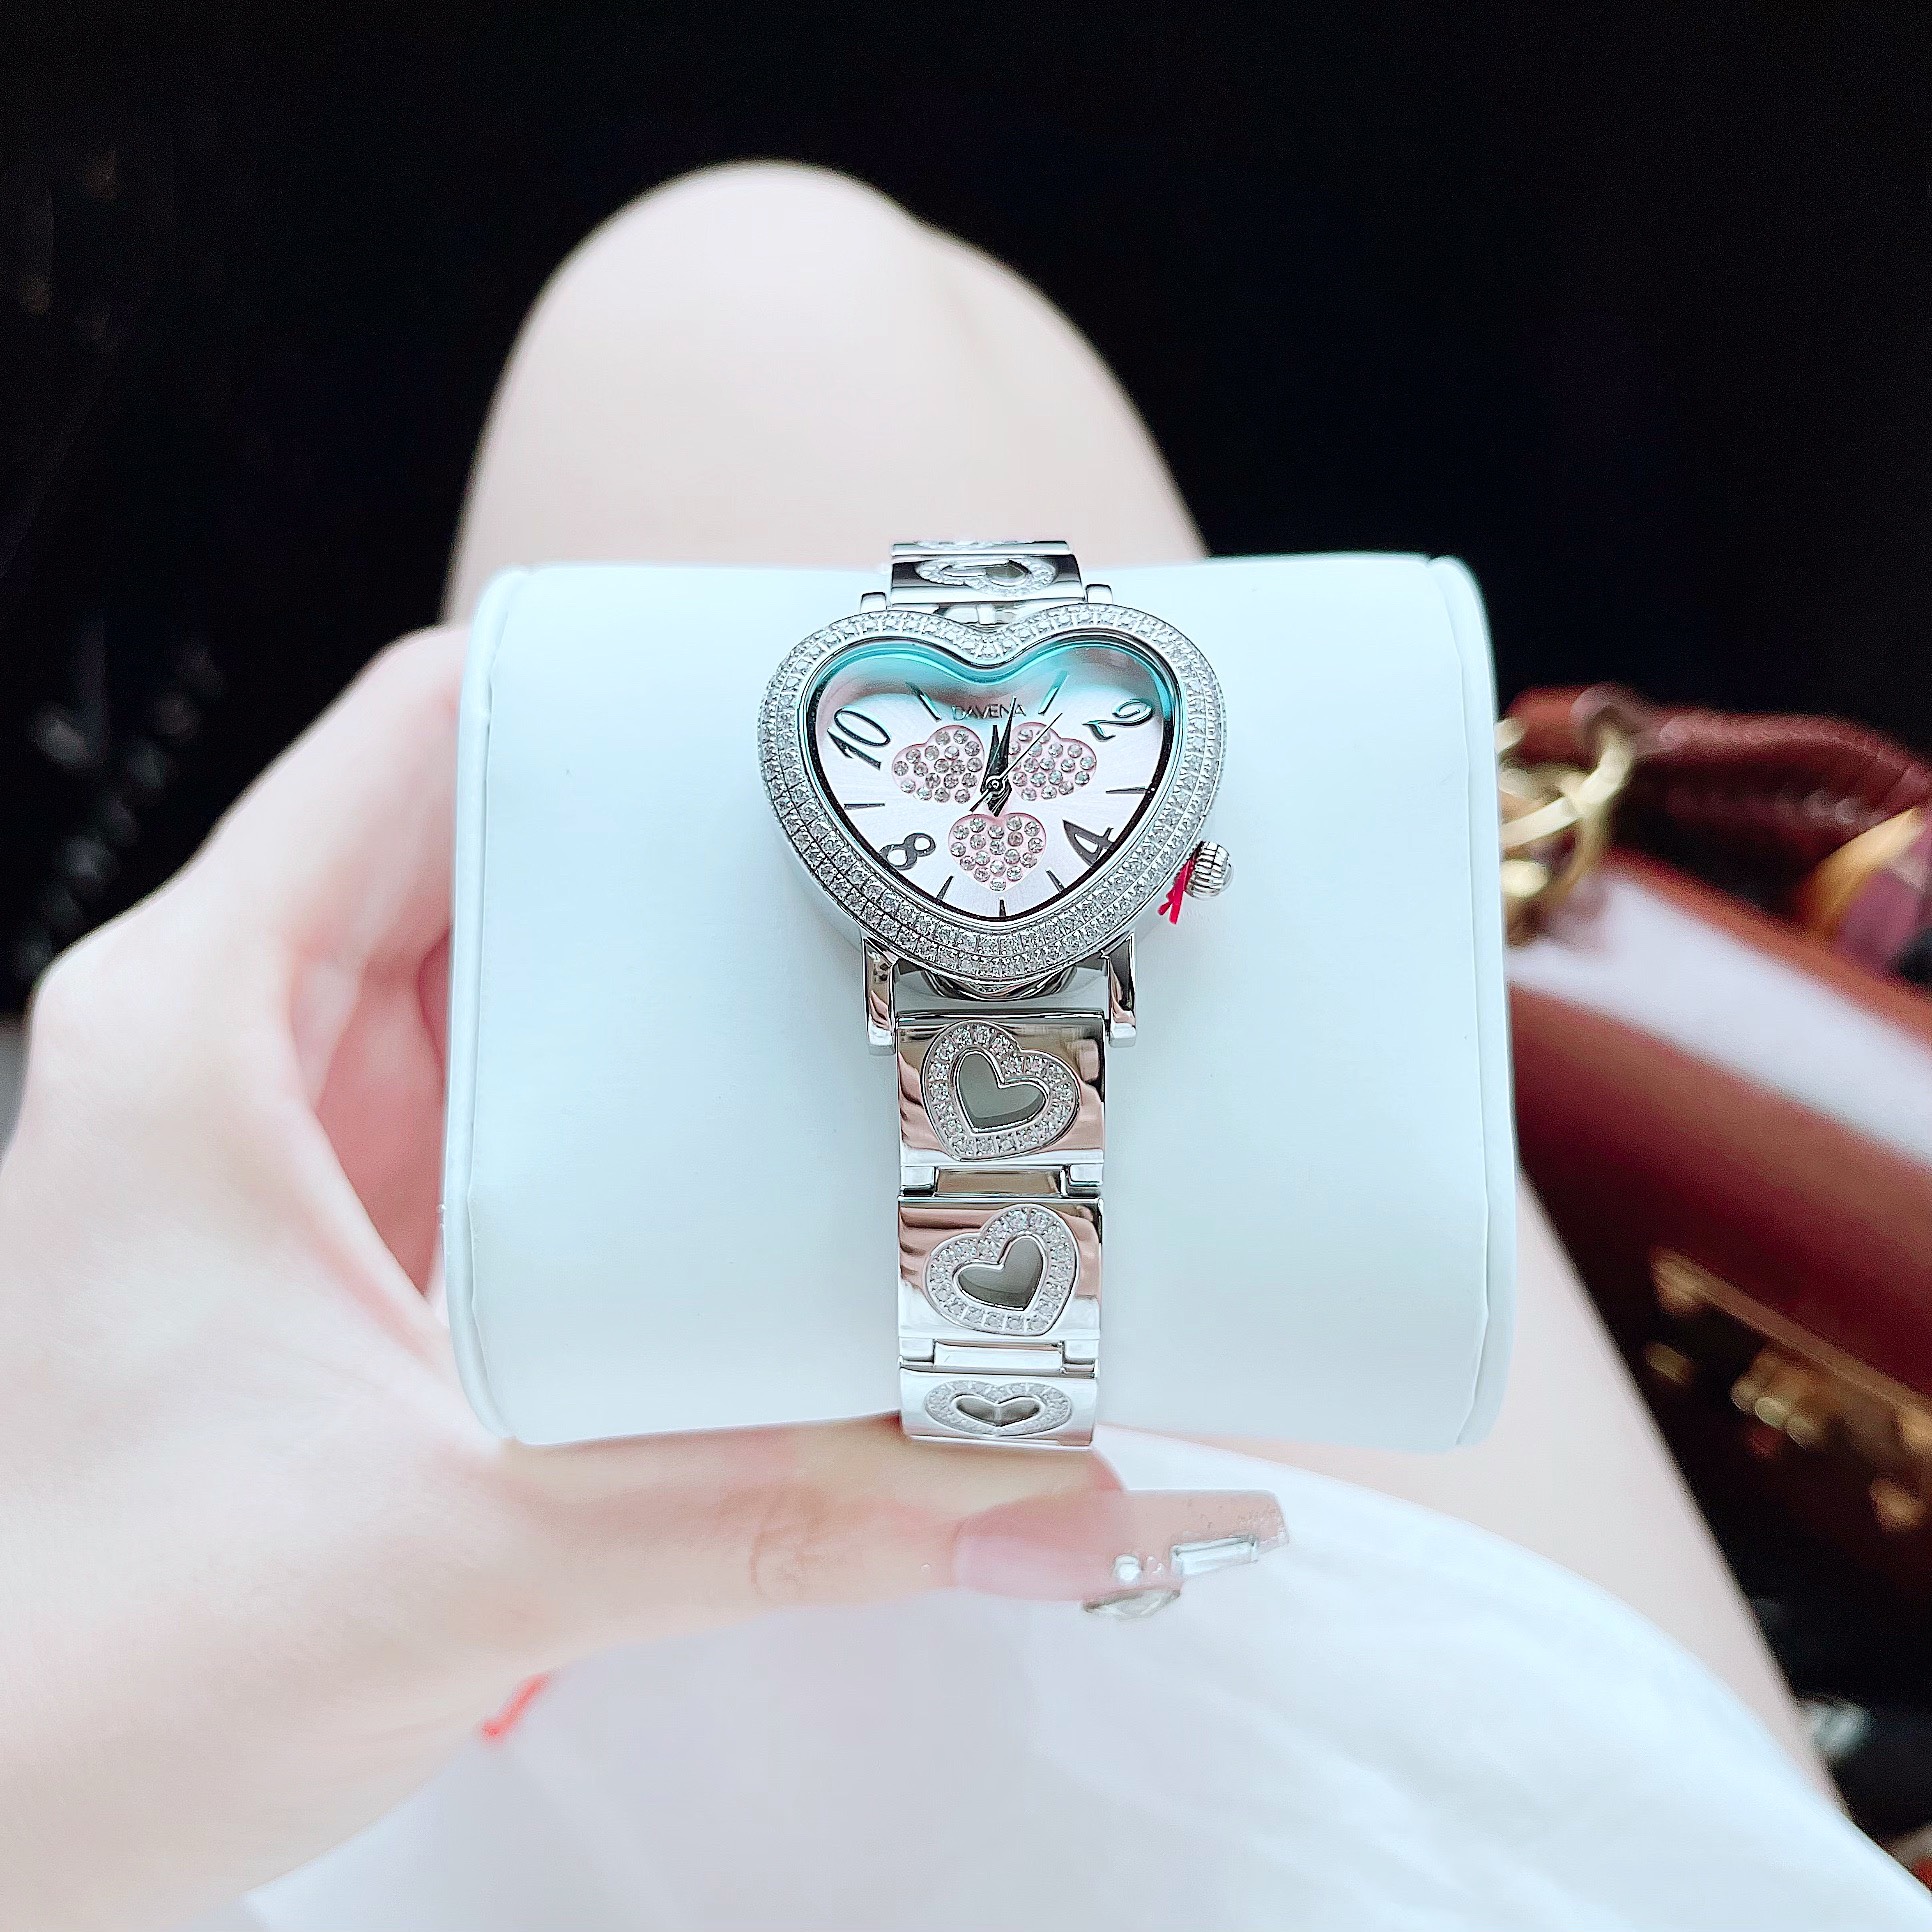 Đồng hồ đeo tay nữ chính hãng dây kim loại cao cấp chống nước davena D61892 size 34mm fullbox  shop kiwi